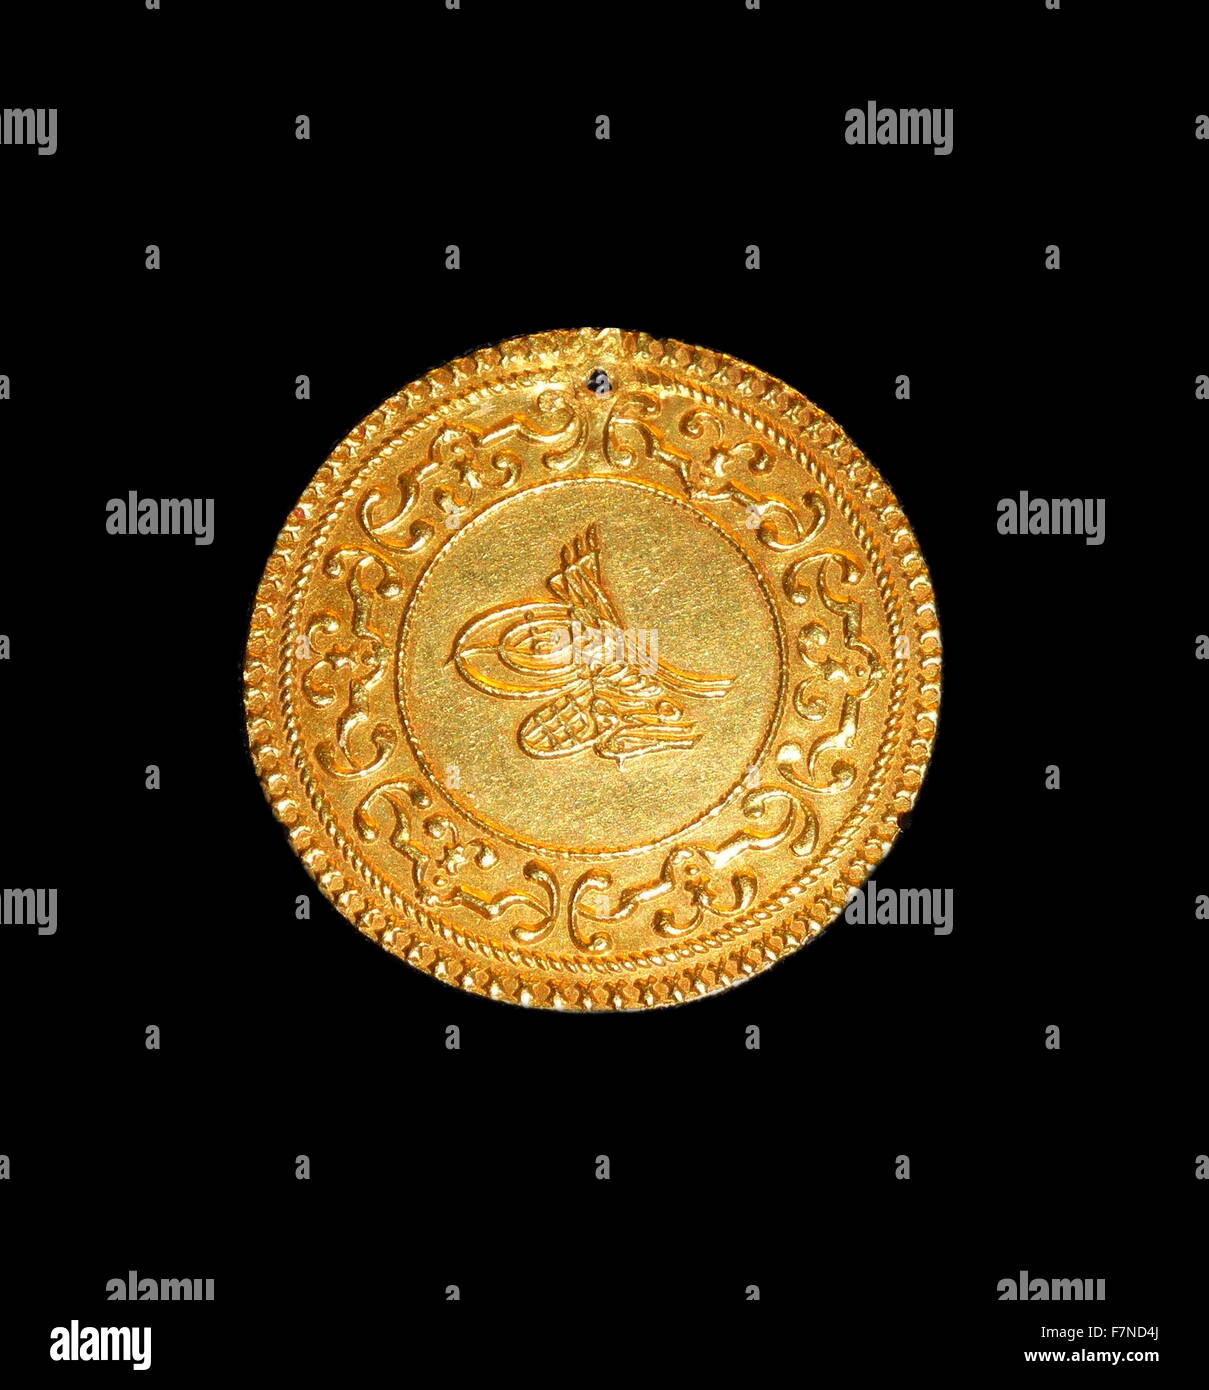 Osmanische Goldmünze, Konstantinopel (Istanbul, Türkei), 1757. Osmanische  Sultane verwendet eine aufwendige Signatur genannt Tugra, selbst auf ihre  Münzen vertreten. Das Tugra diente als die kaiserliche Unterschrift des  Sultans Stockfotografie - Alamy